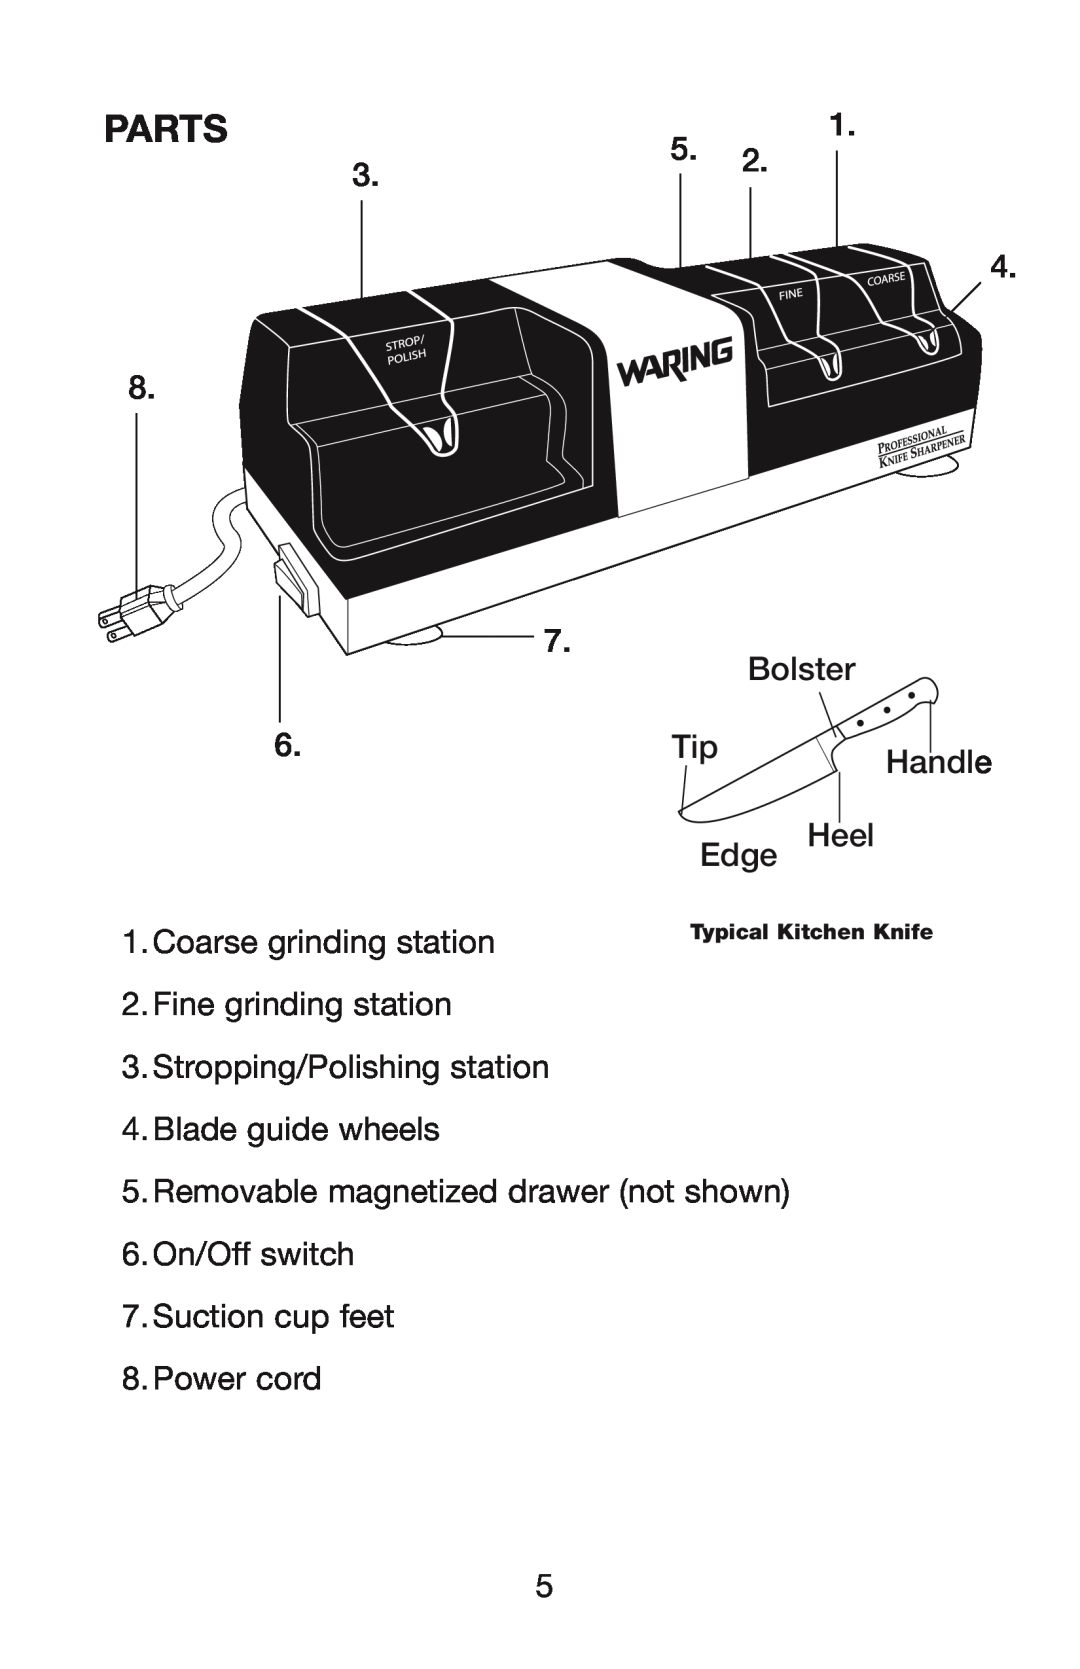 Waring KS80 manual Parts 